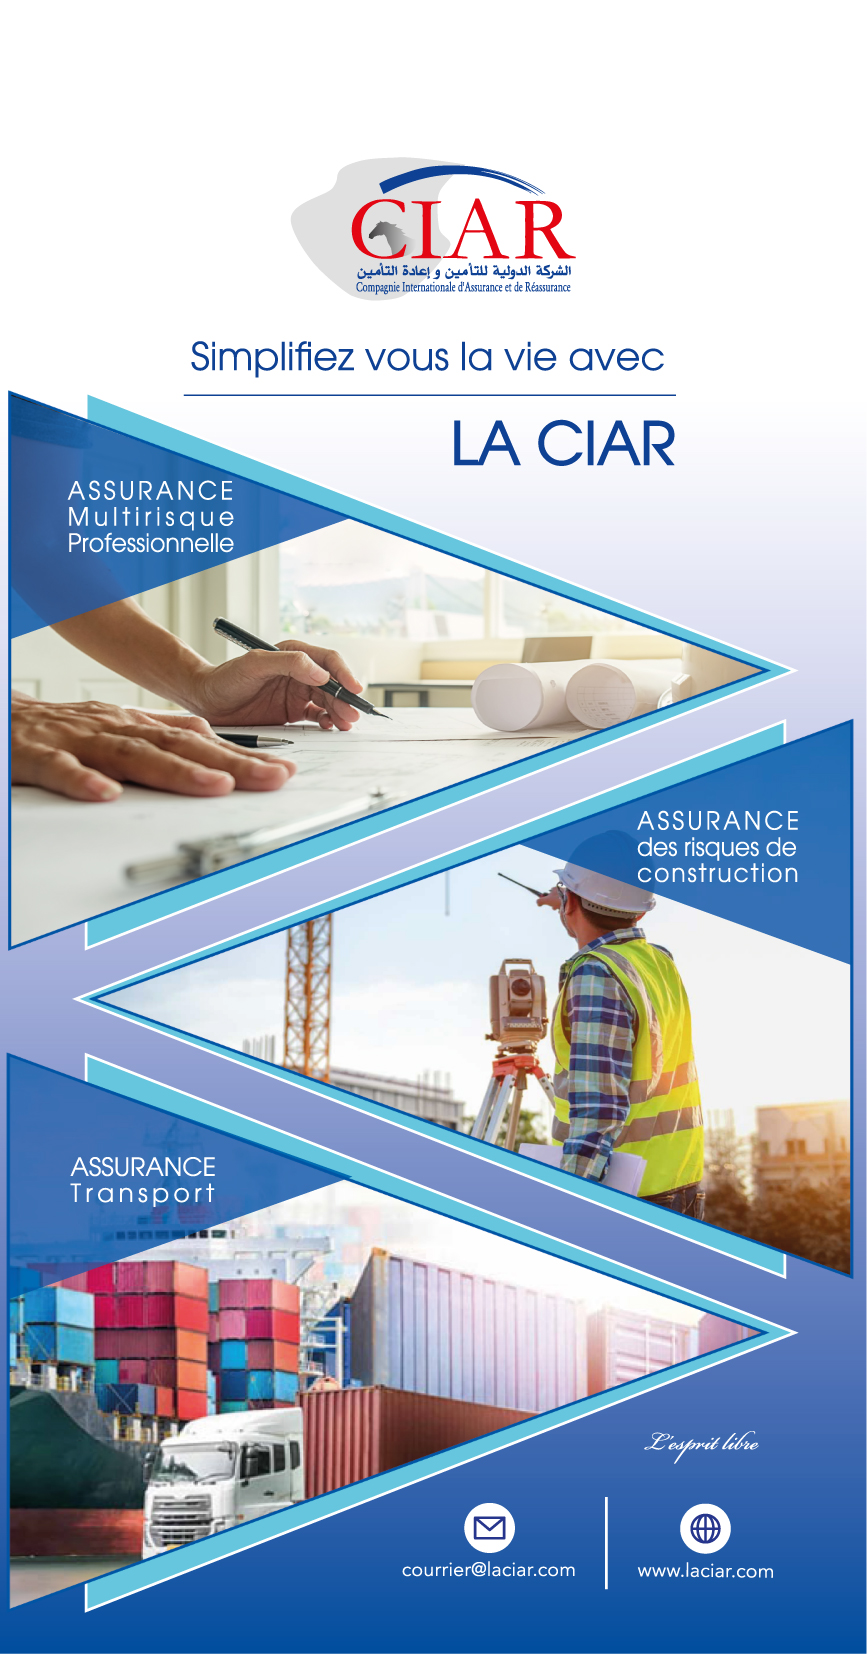 CIAR-Compagnie Internationale d'Assurance & de Réassurance, Spa